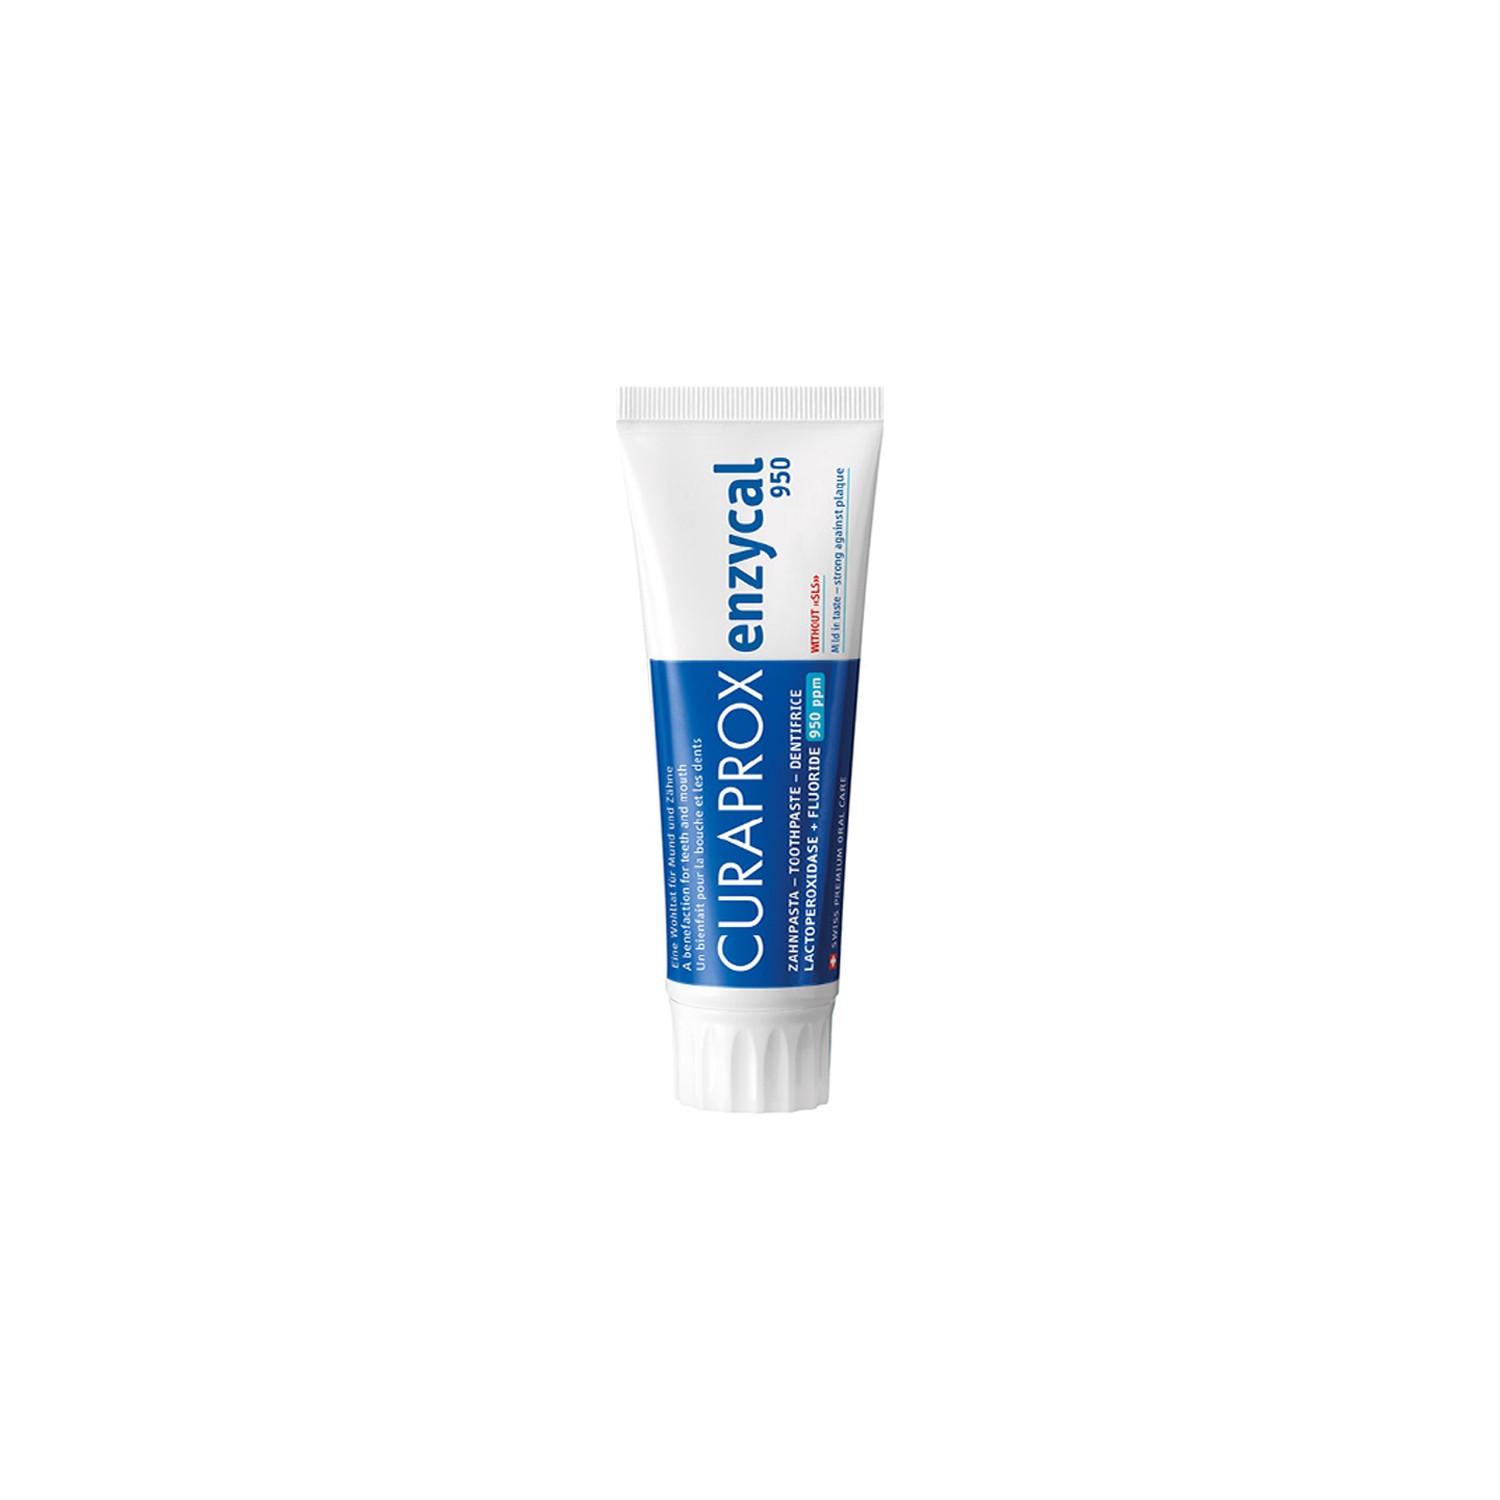 Зубная паста Curaprox Enzycal 950 для ежедневного использования, 75мл цена и фото